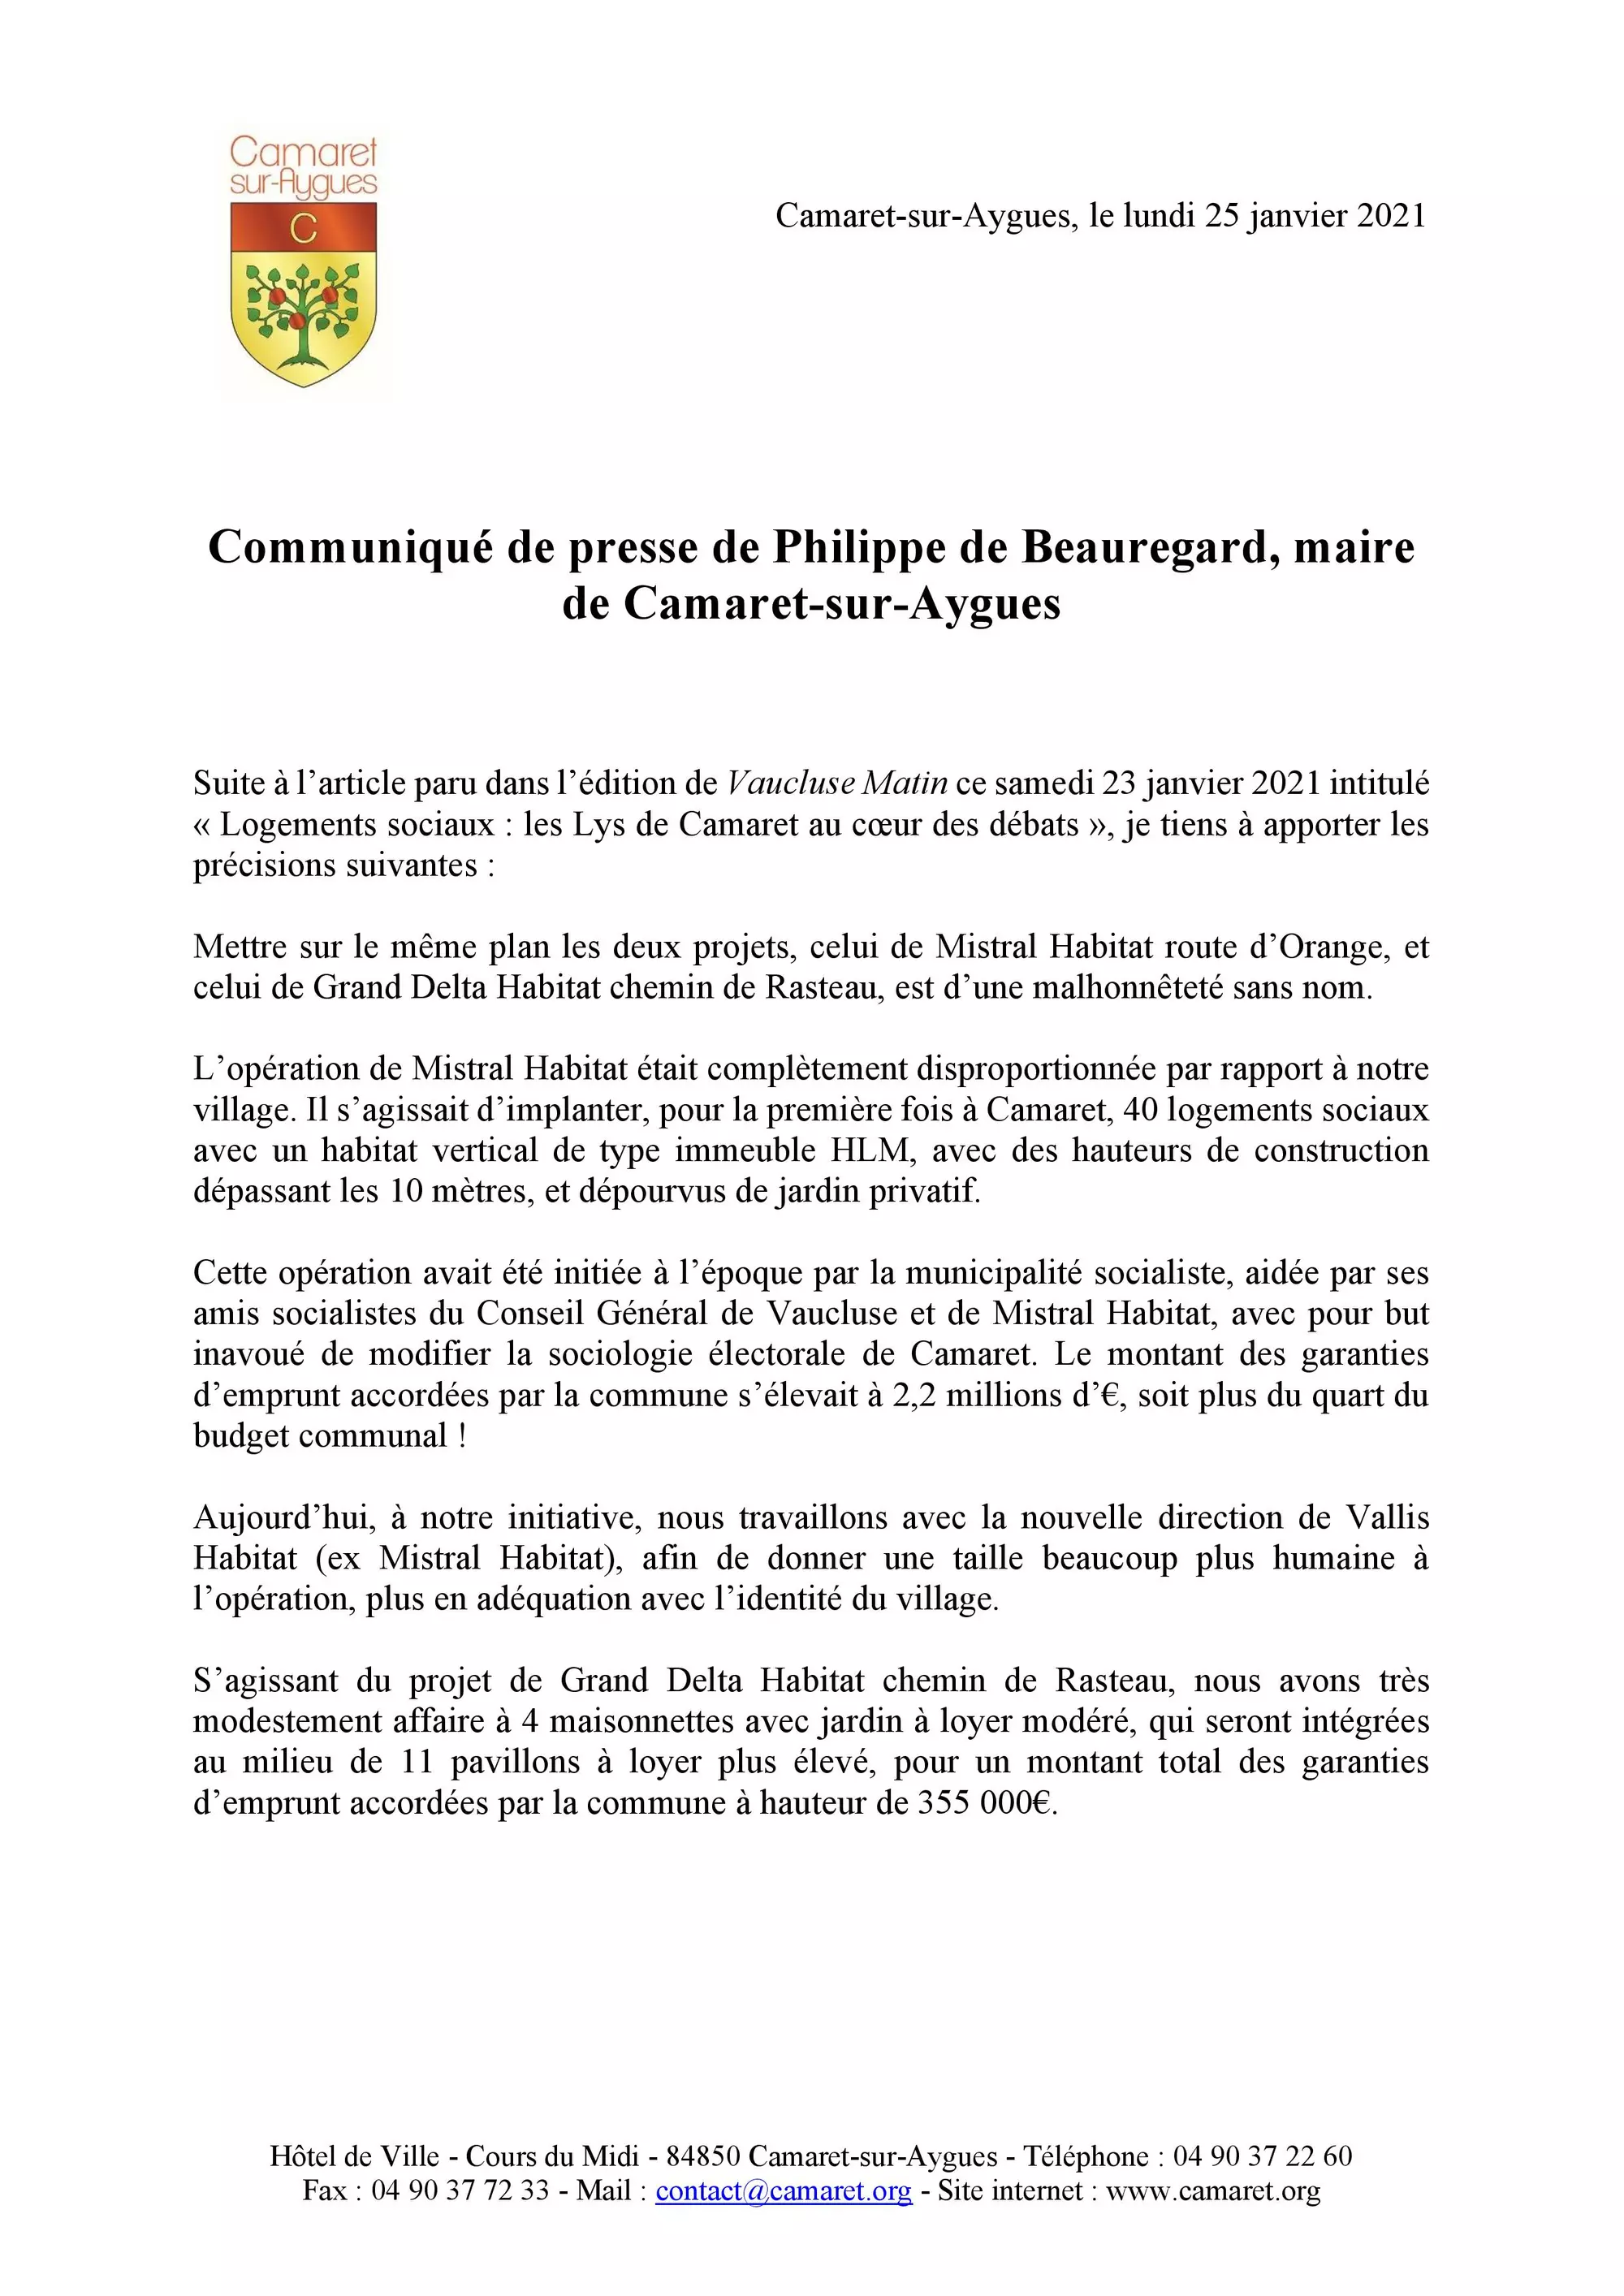 Communiqué de presse de Philippe de Beauregard, maire de Camaret-sur-Aygues